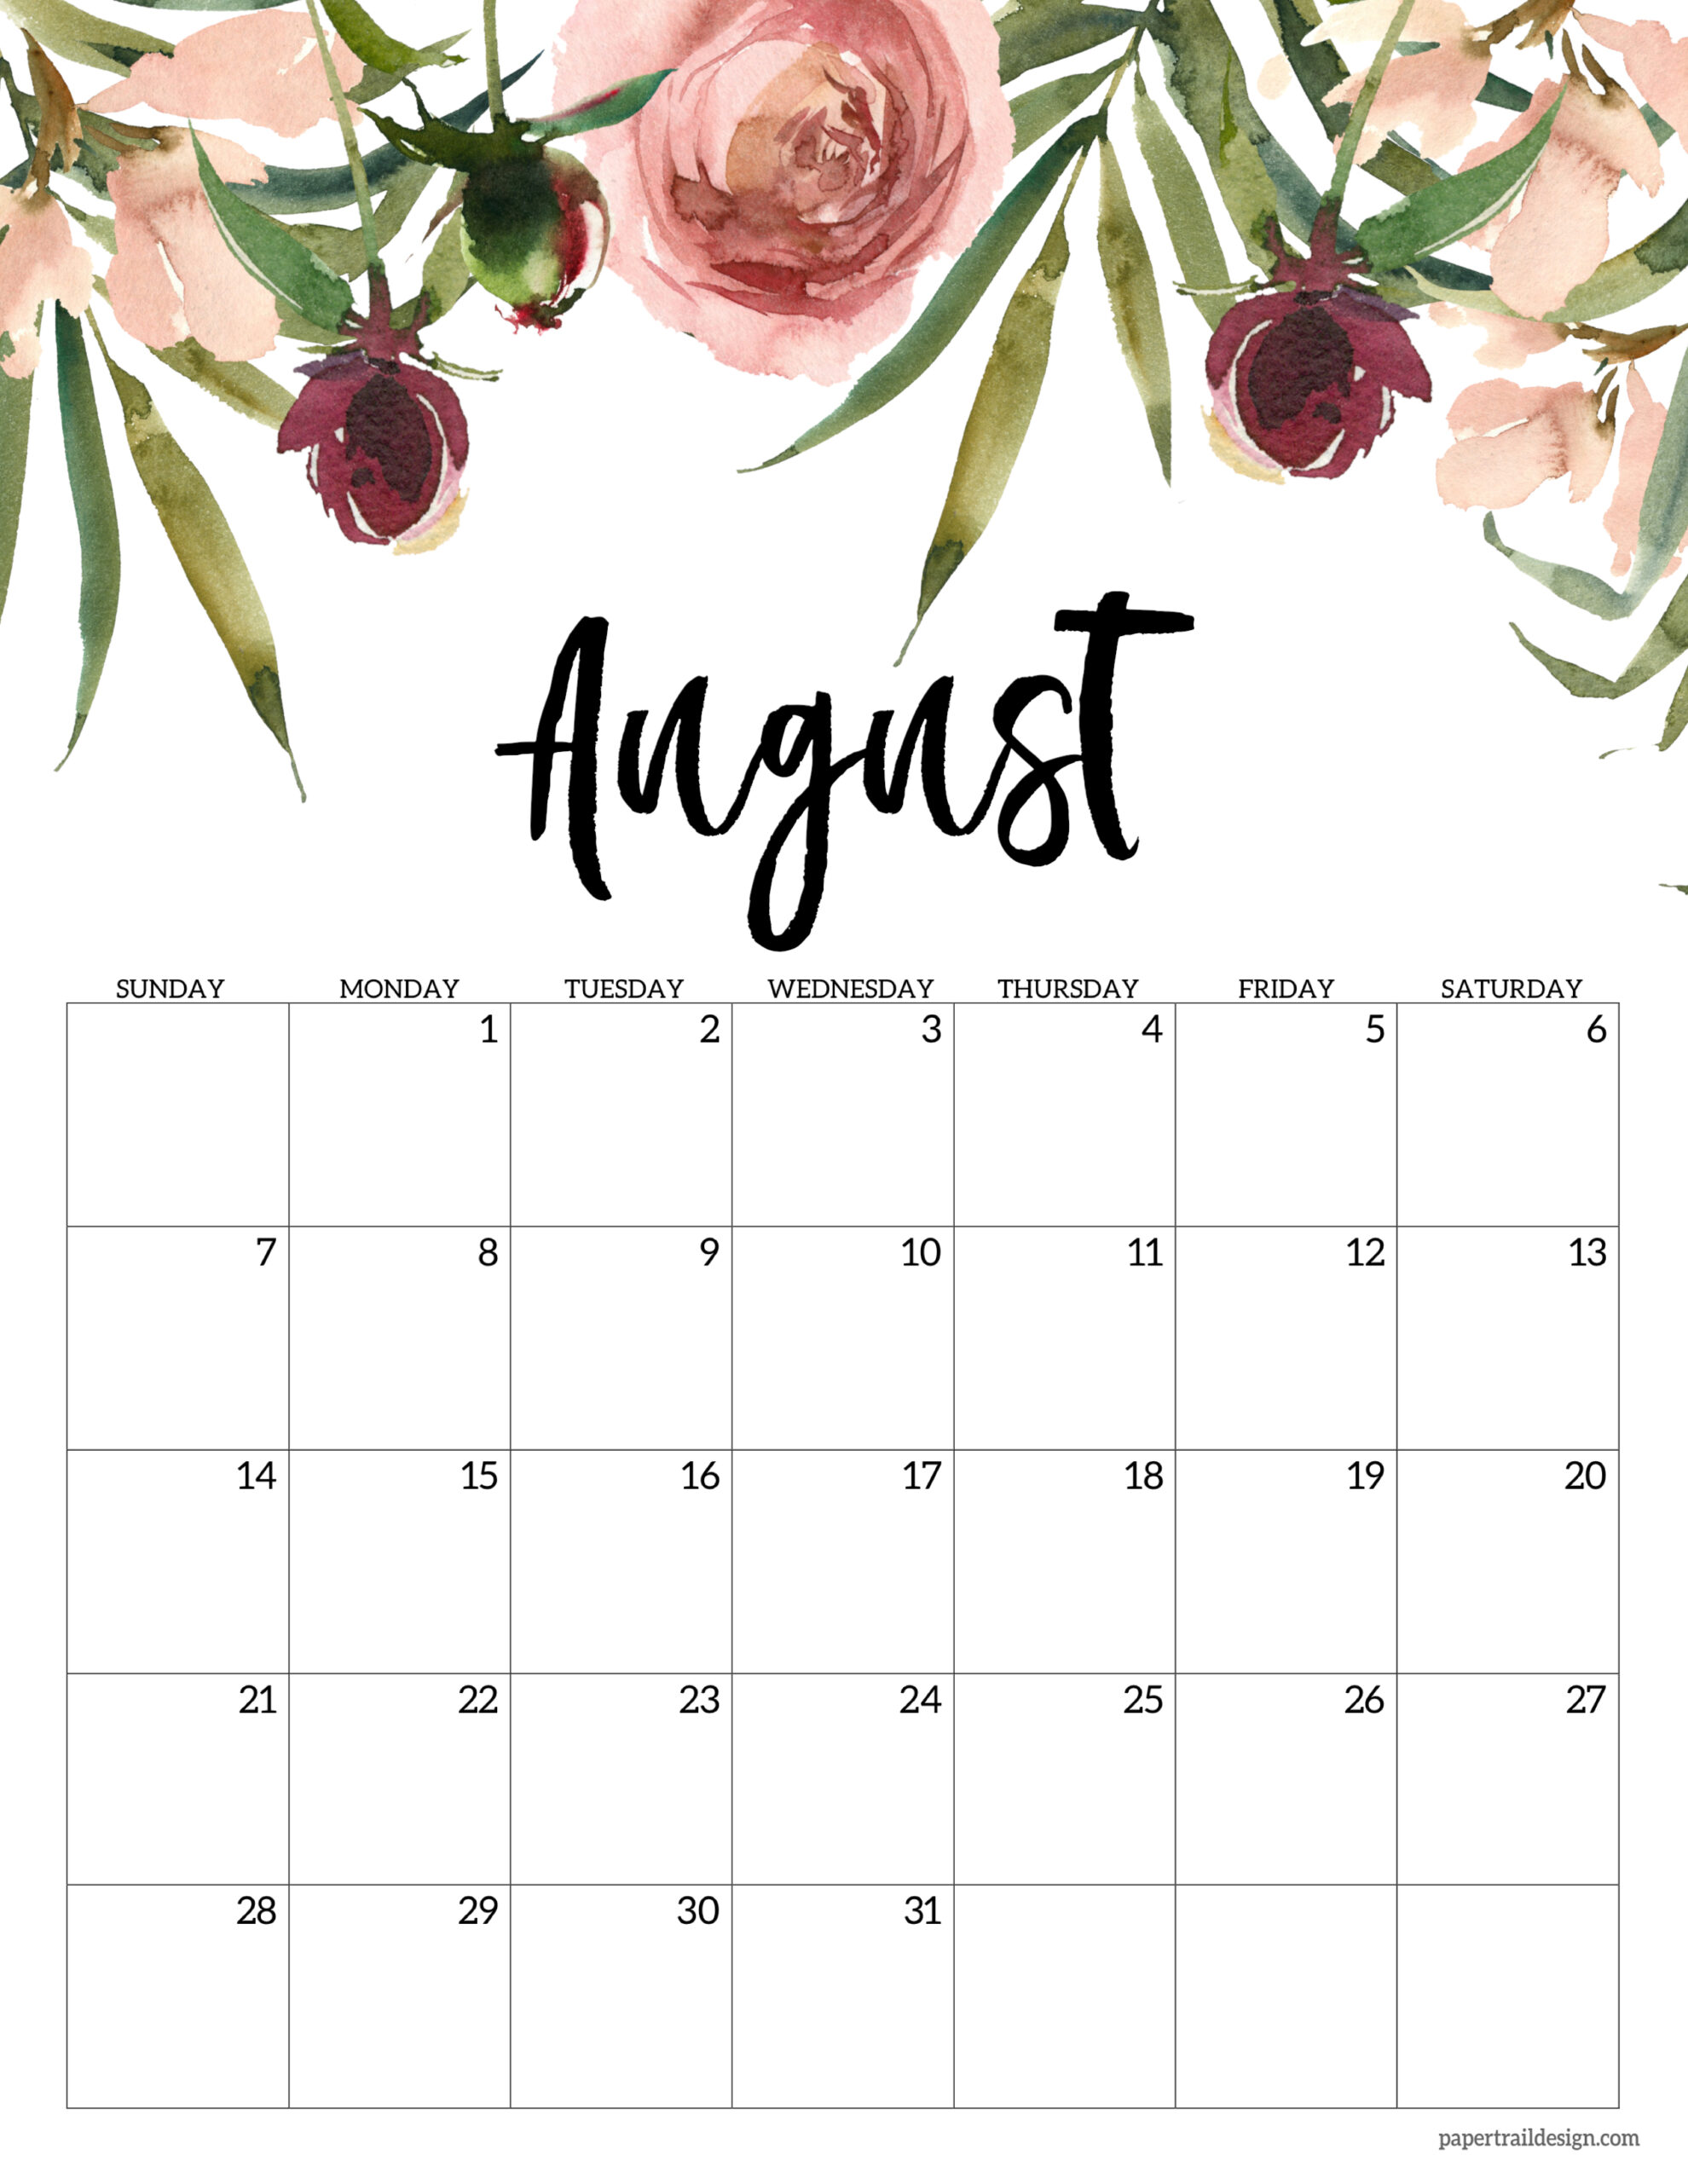 calendar 2022 july august